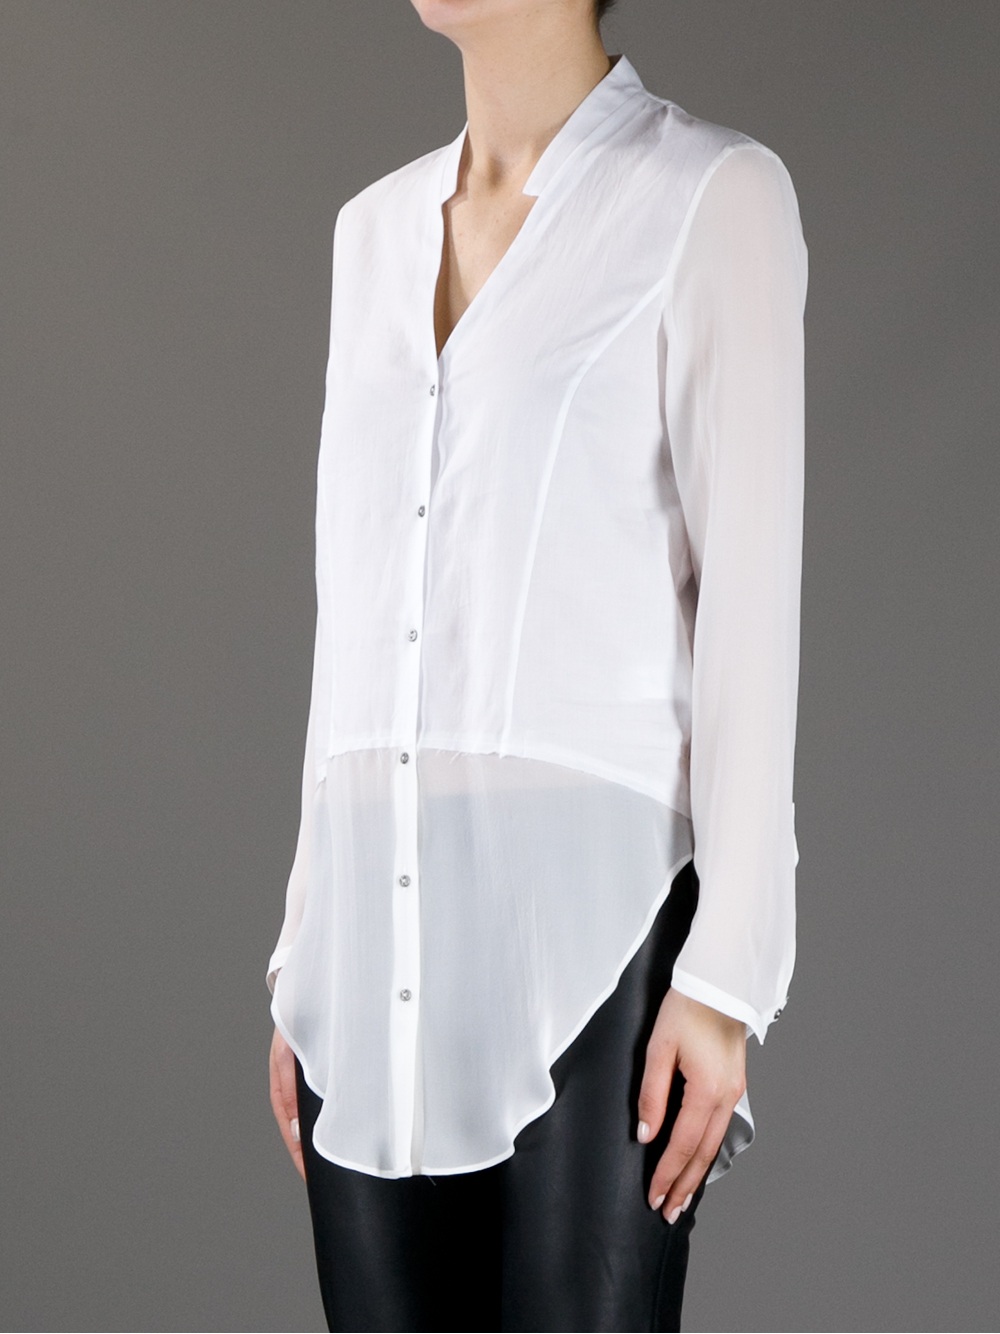 Lyst - Helmut Lang Sheer Sleeve Blouse in White